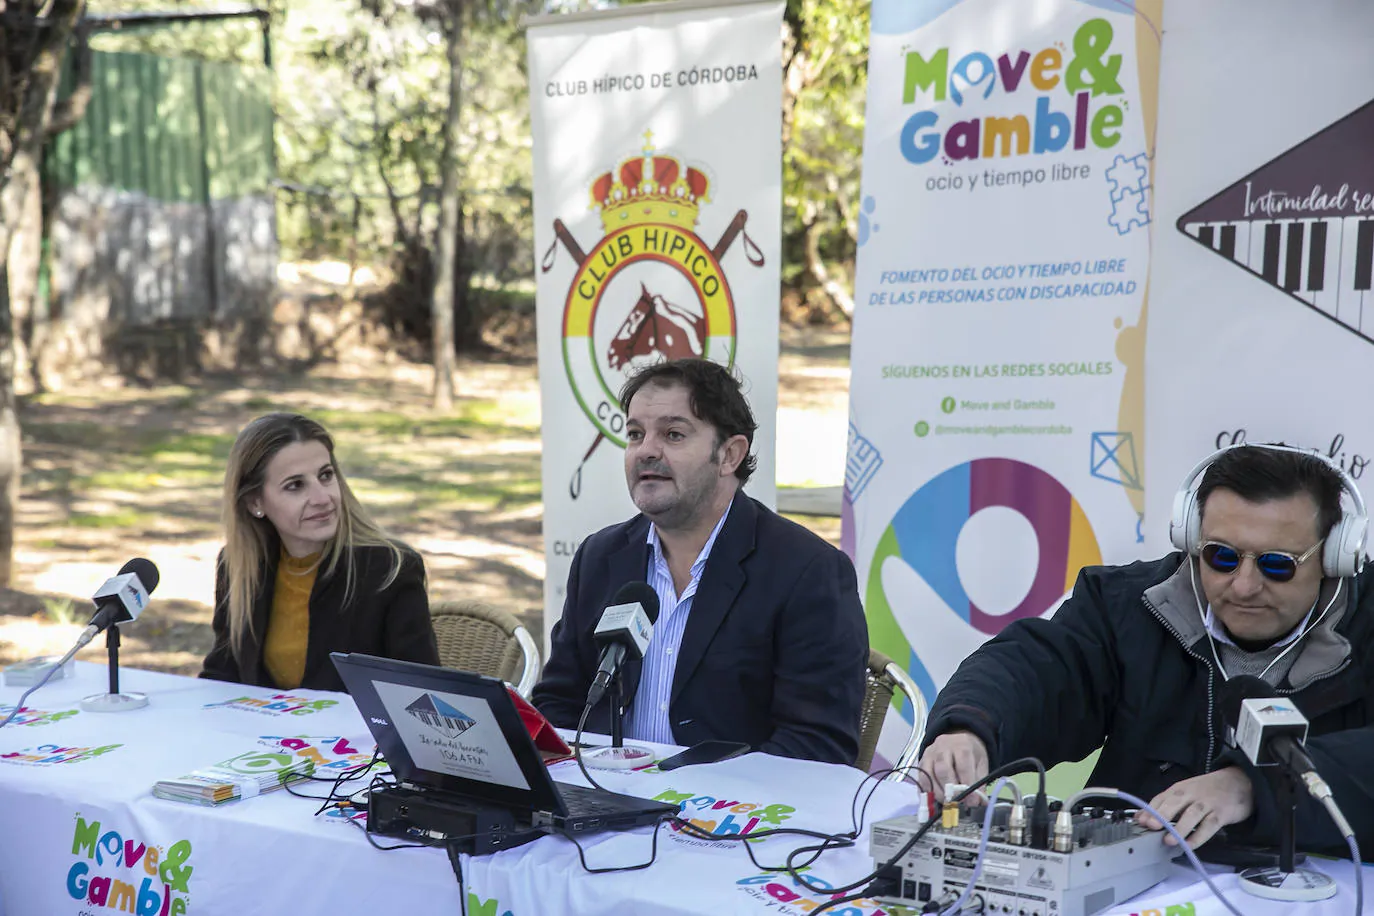 La presentación del proyecto Move and Gamble en el Club Hípico de Córdoba, en imágenes